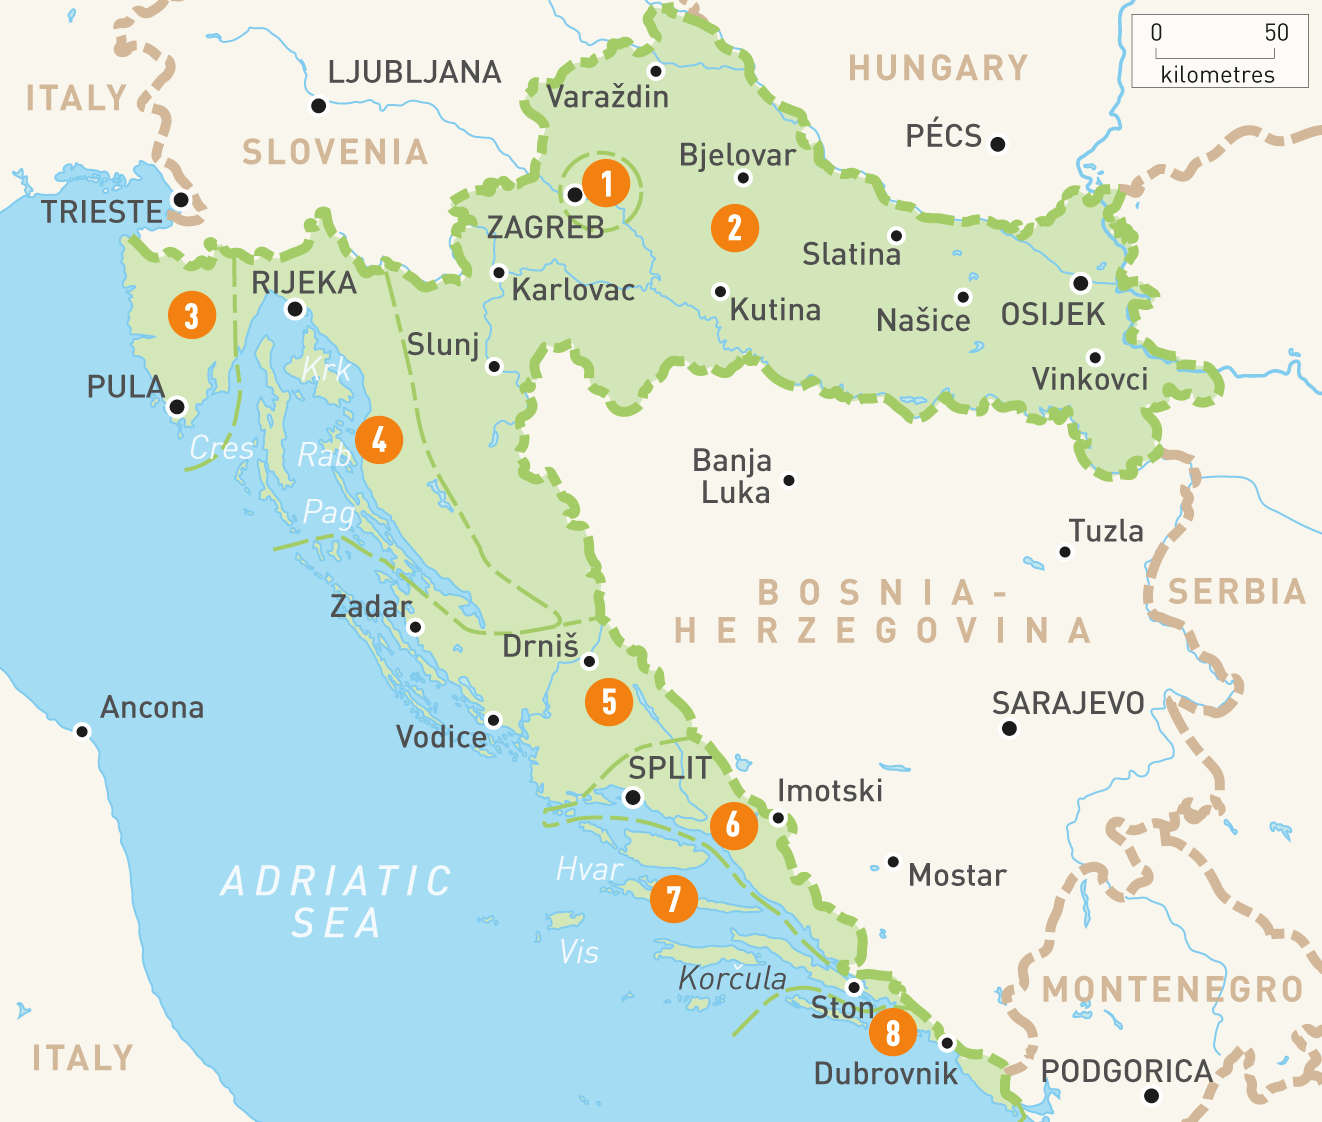 Карта хорватии на русском языке с городами подробная